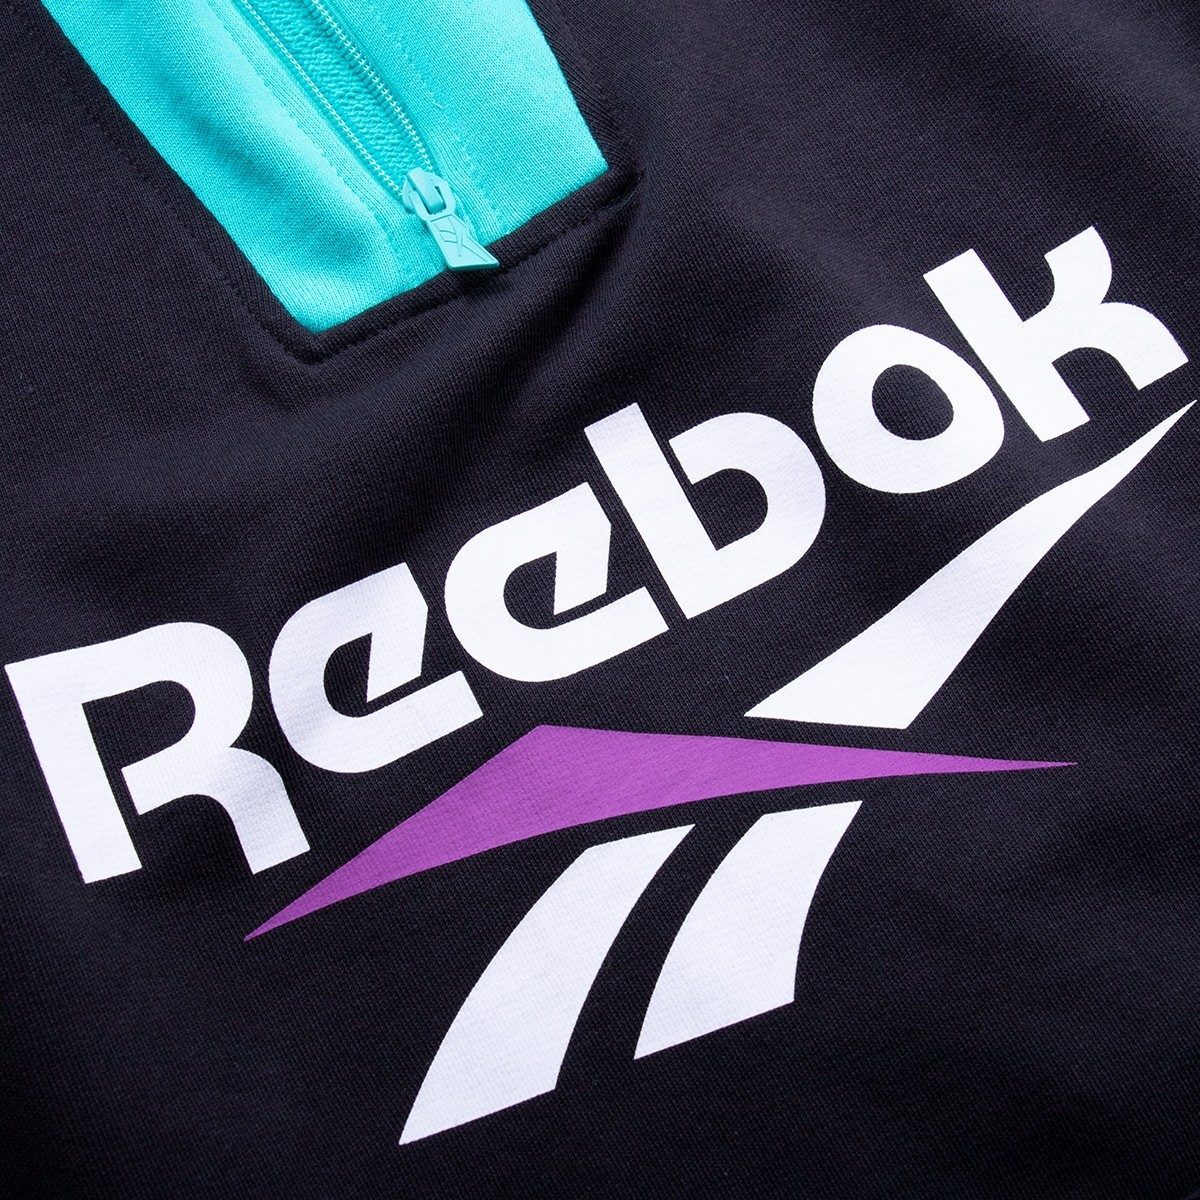 Reebok Logo Vector at Vectorified.com | Collection of Reebok Logo ...